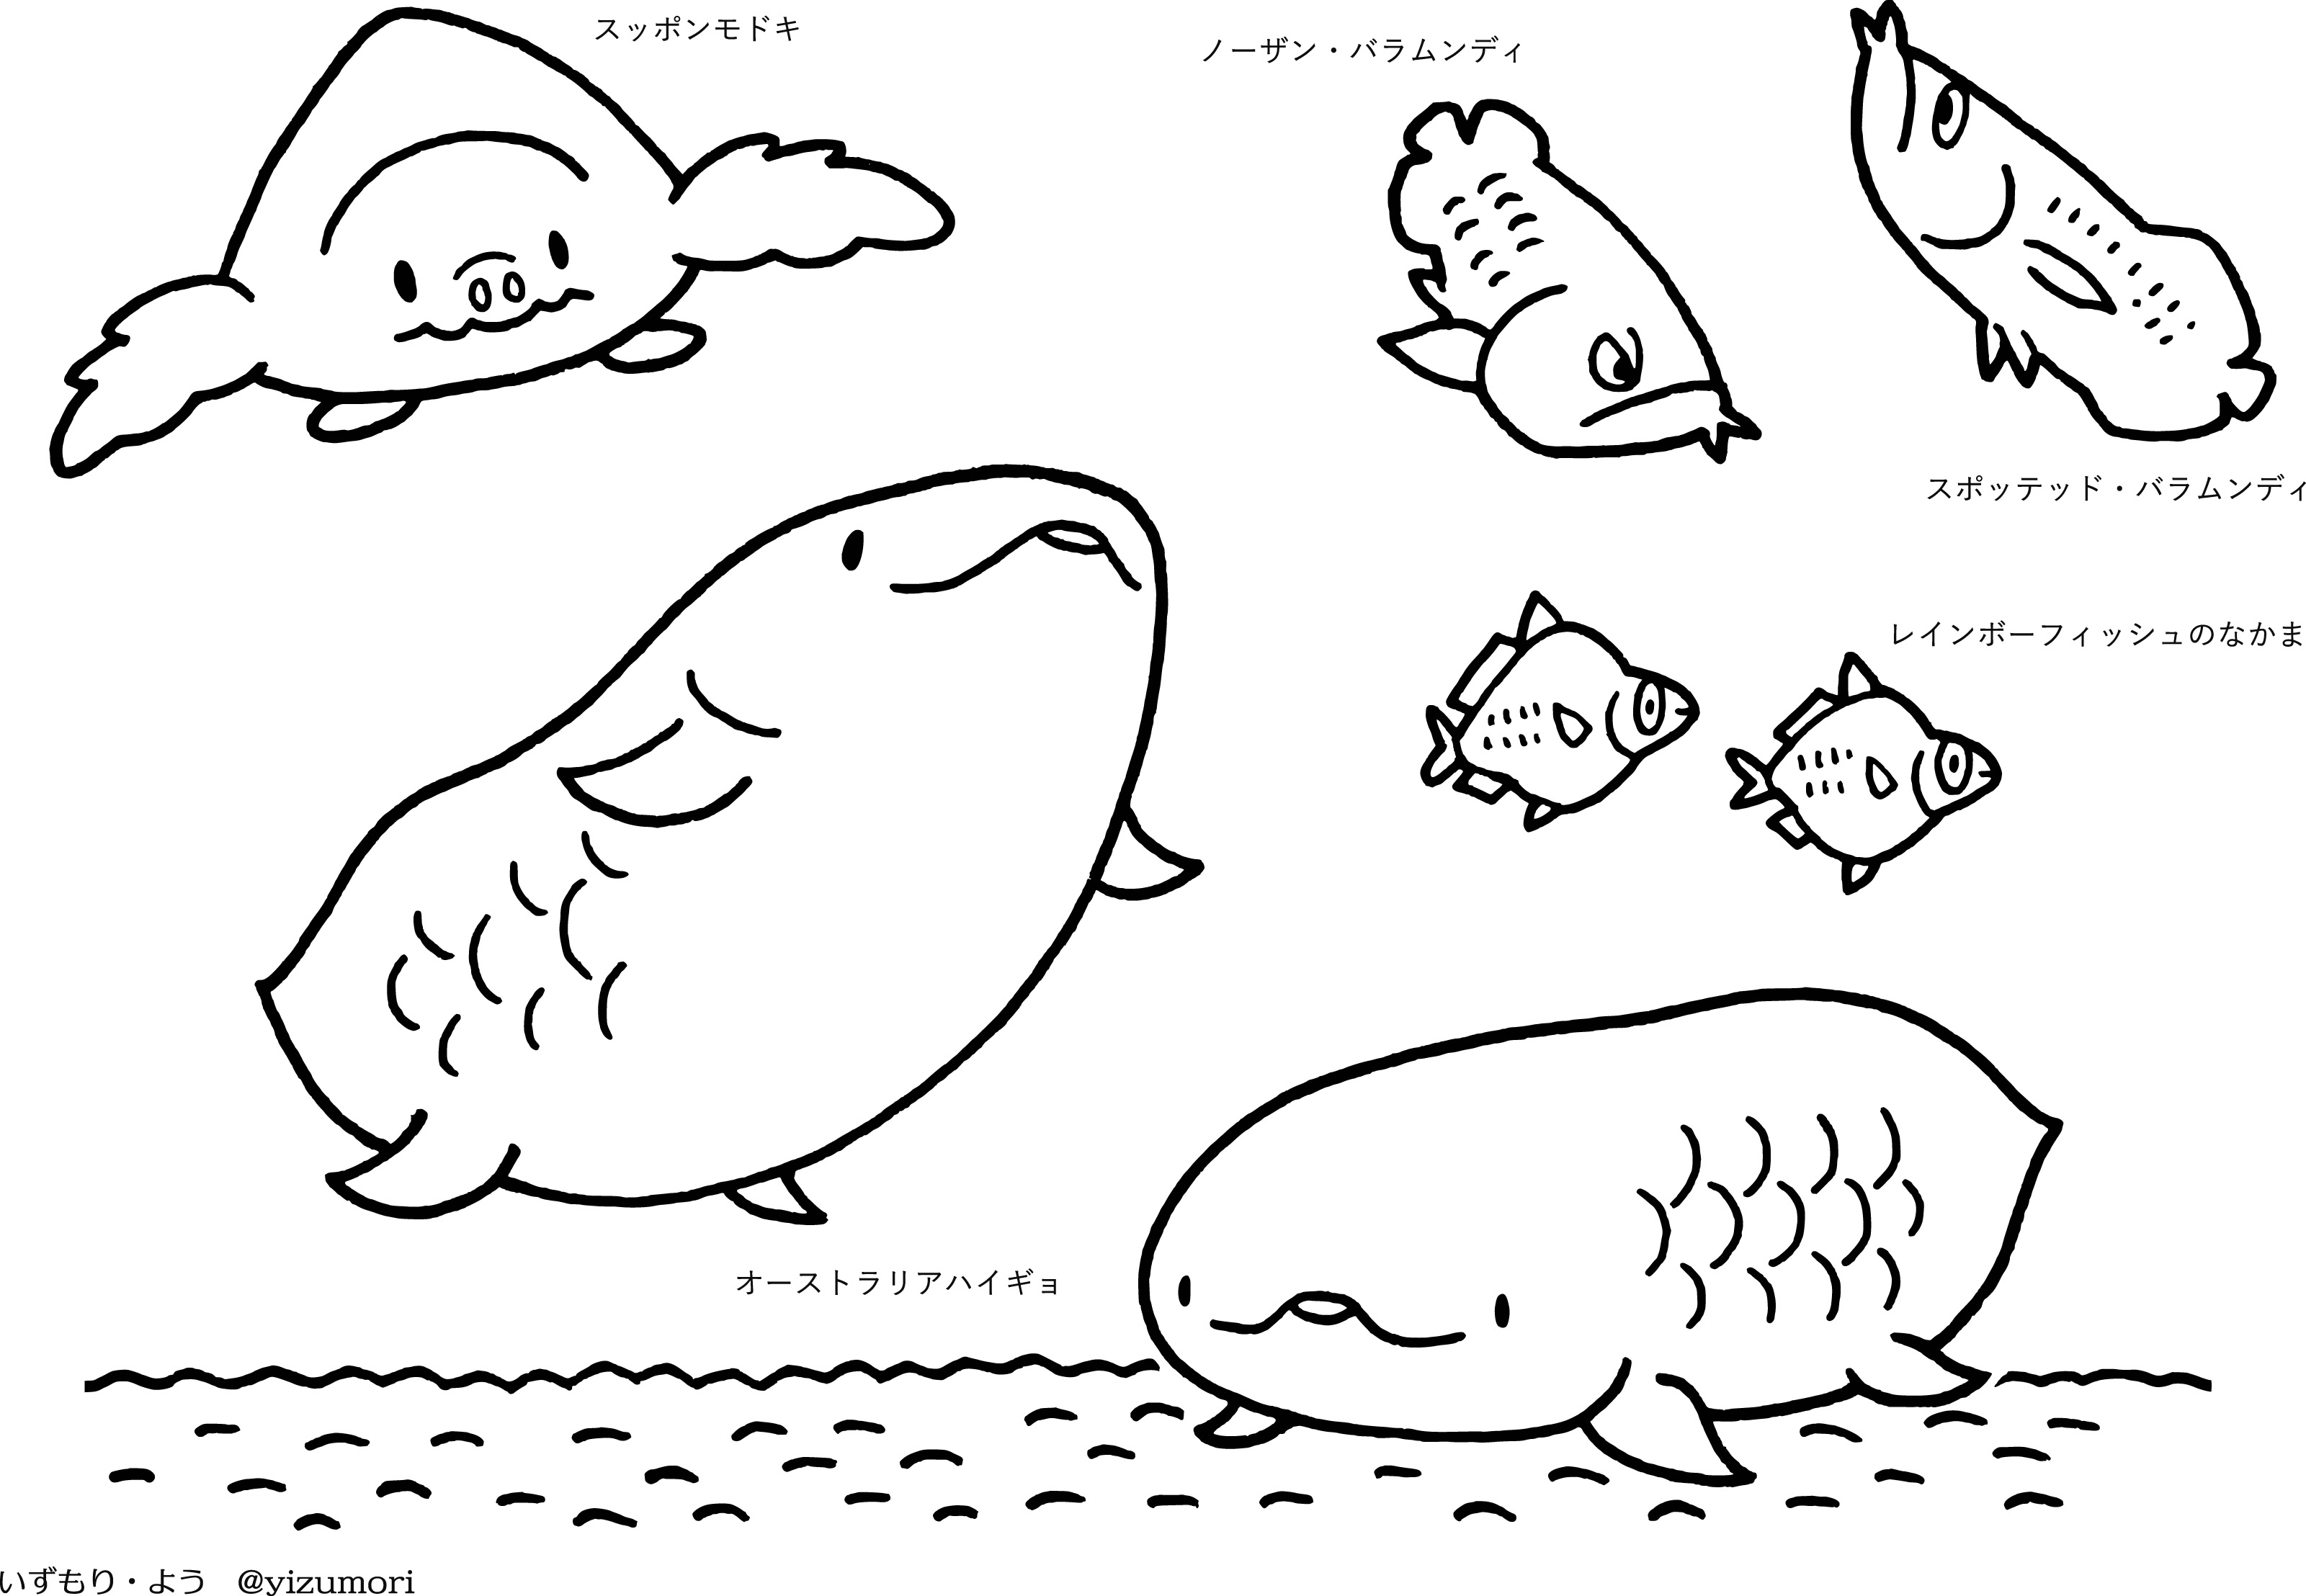 いずもり よう 在 Twitter 上 ネットプリント続き イラスト漢字クイズ 海水魚編 淡水 汽水 軟骨魚編 迷路水族館 オーストラリアの淡水魚ぬりえ カラーは1枚60円 営利目的使用禁止 教育 保育関係の配布可 登録データ